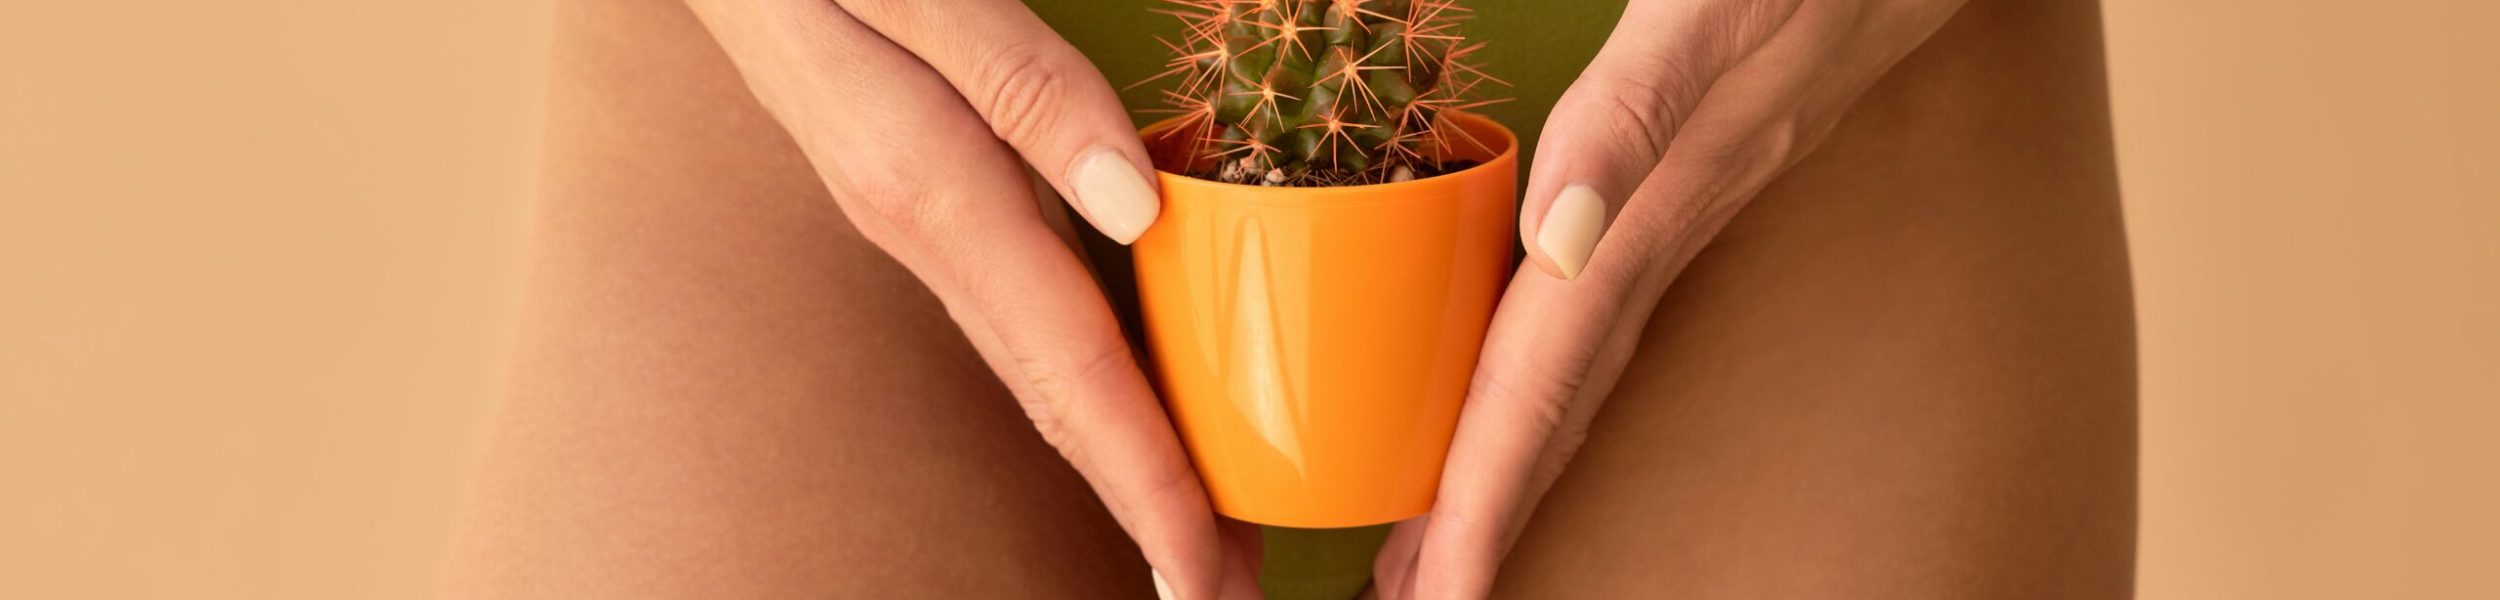 bannière article femme cachant maillot intégral avec un cactus